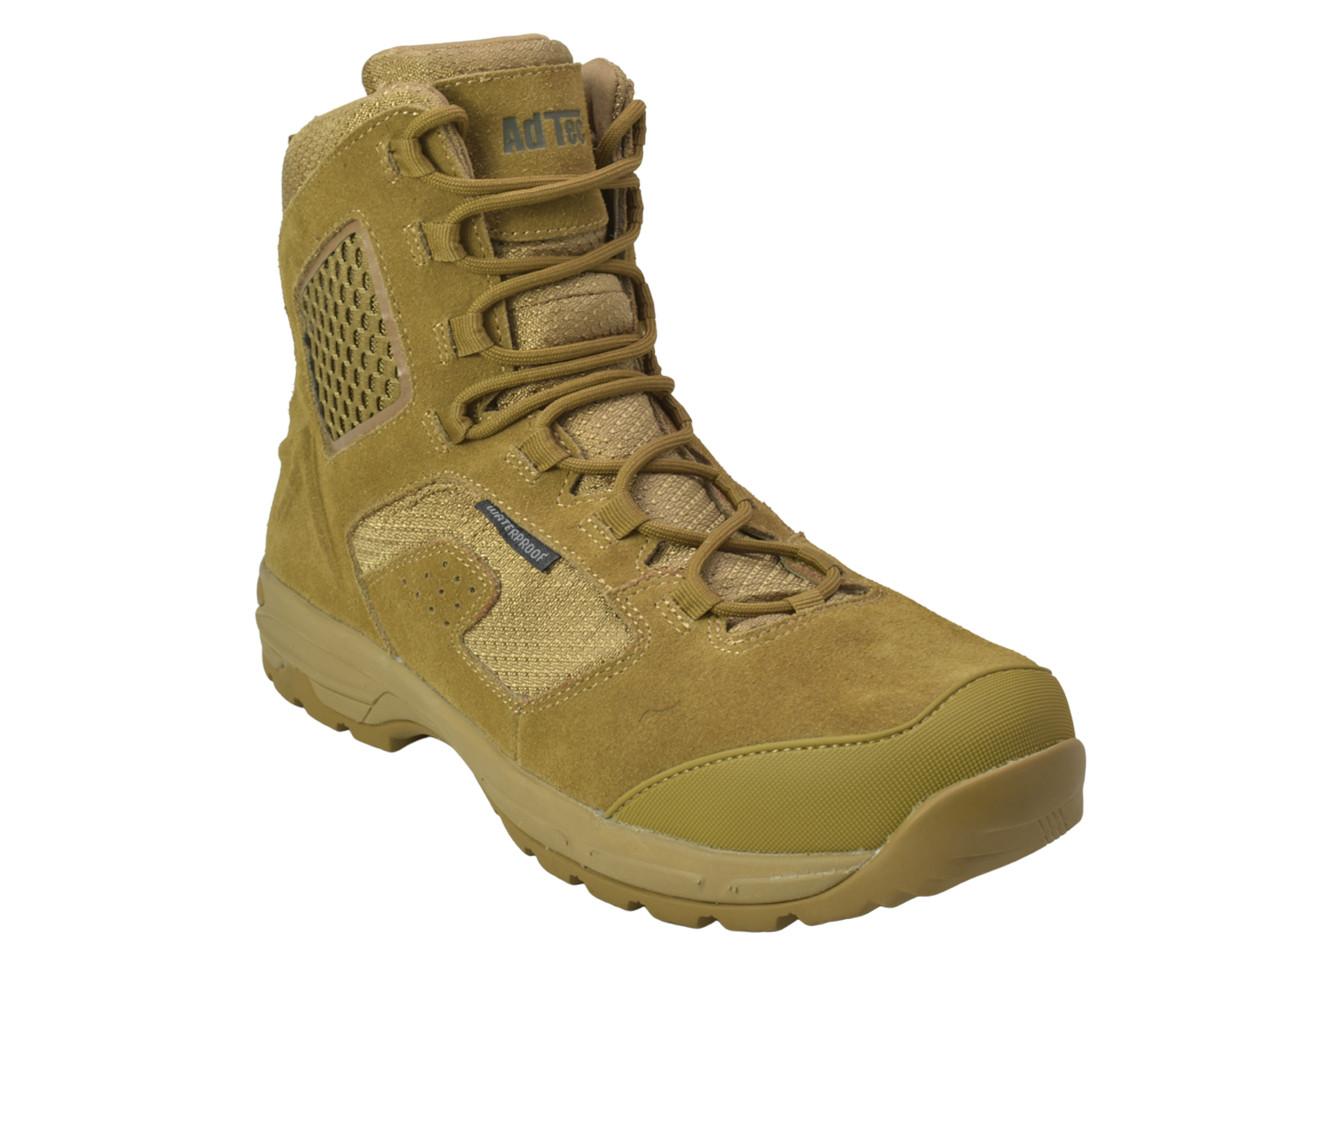 Men's AdTec Men's 8" Suede Waterproof Tactical Work Boots